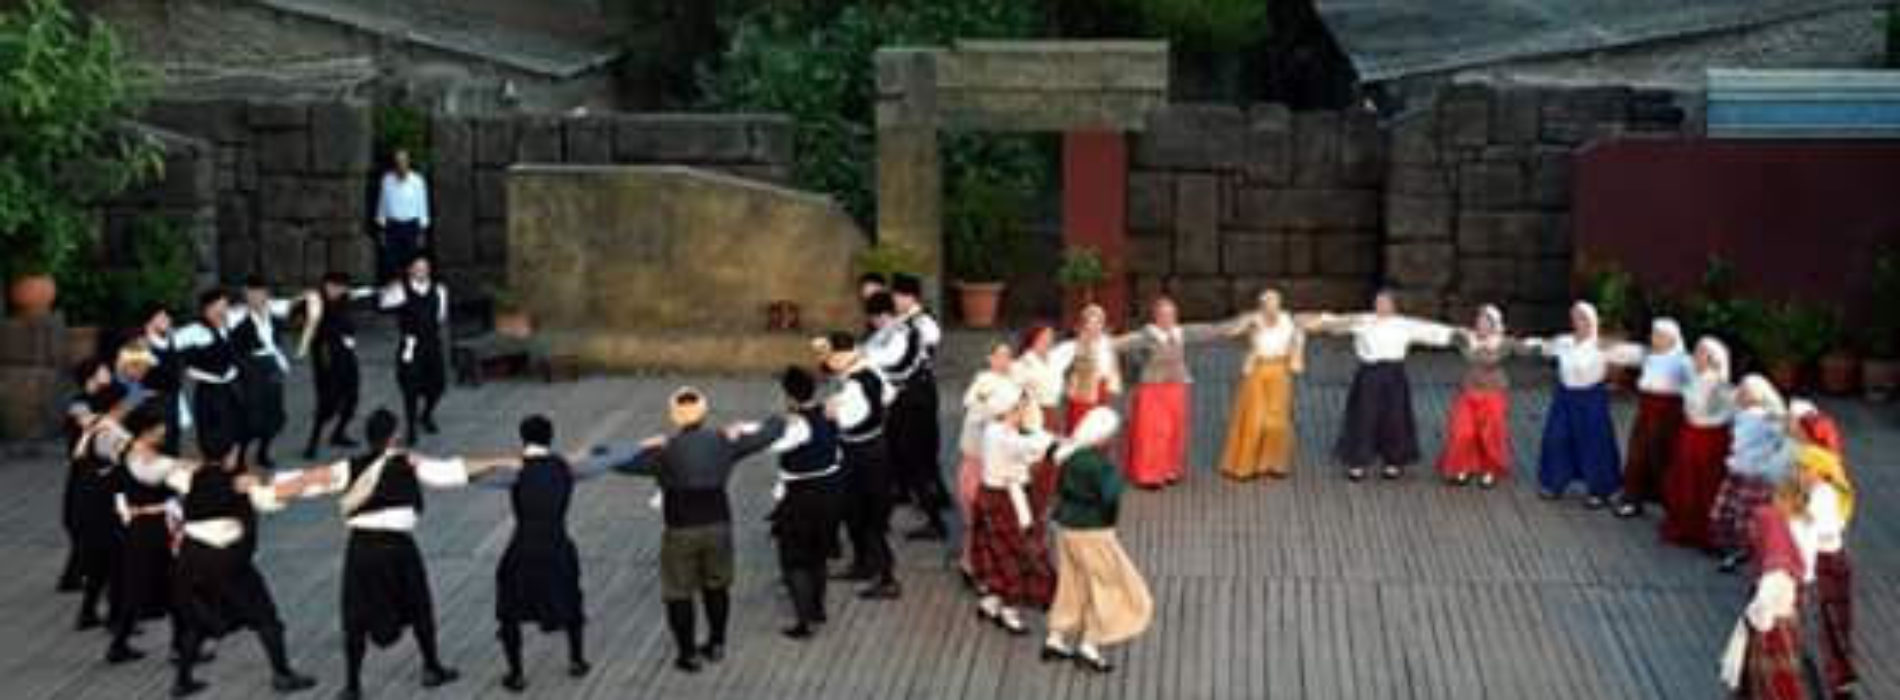 6ο Φεστιβάλ Παραδοσιακού Χορού και μουσικής Πάτμου – Δελτίο Τύπου